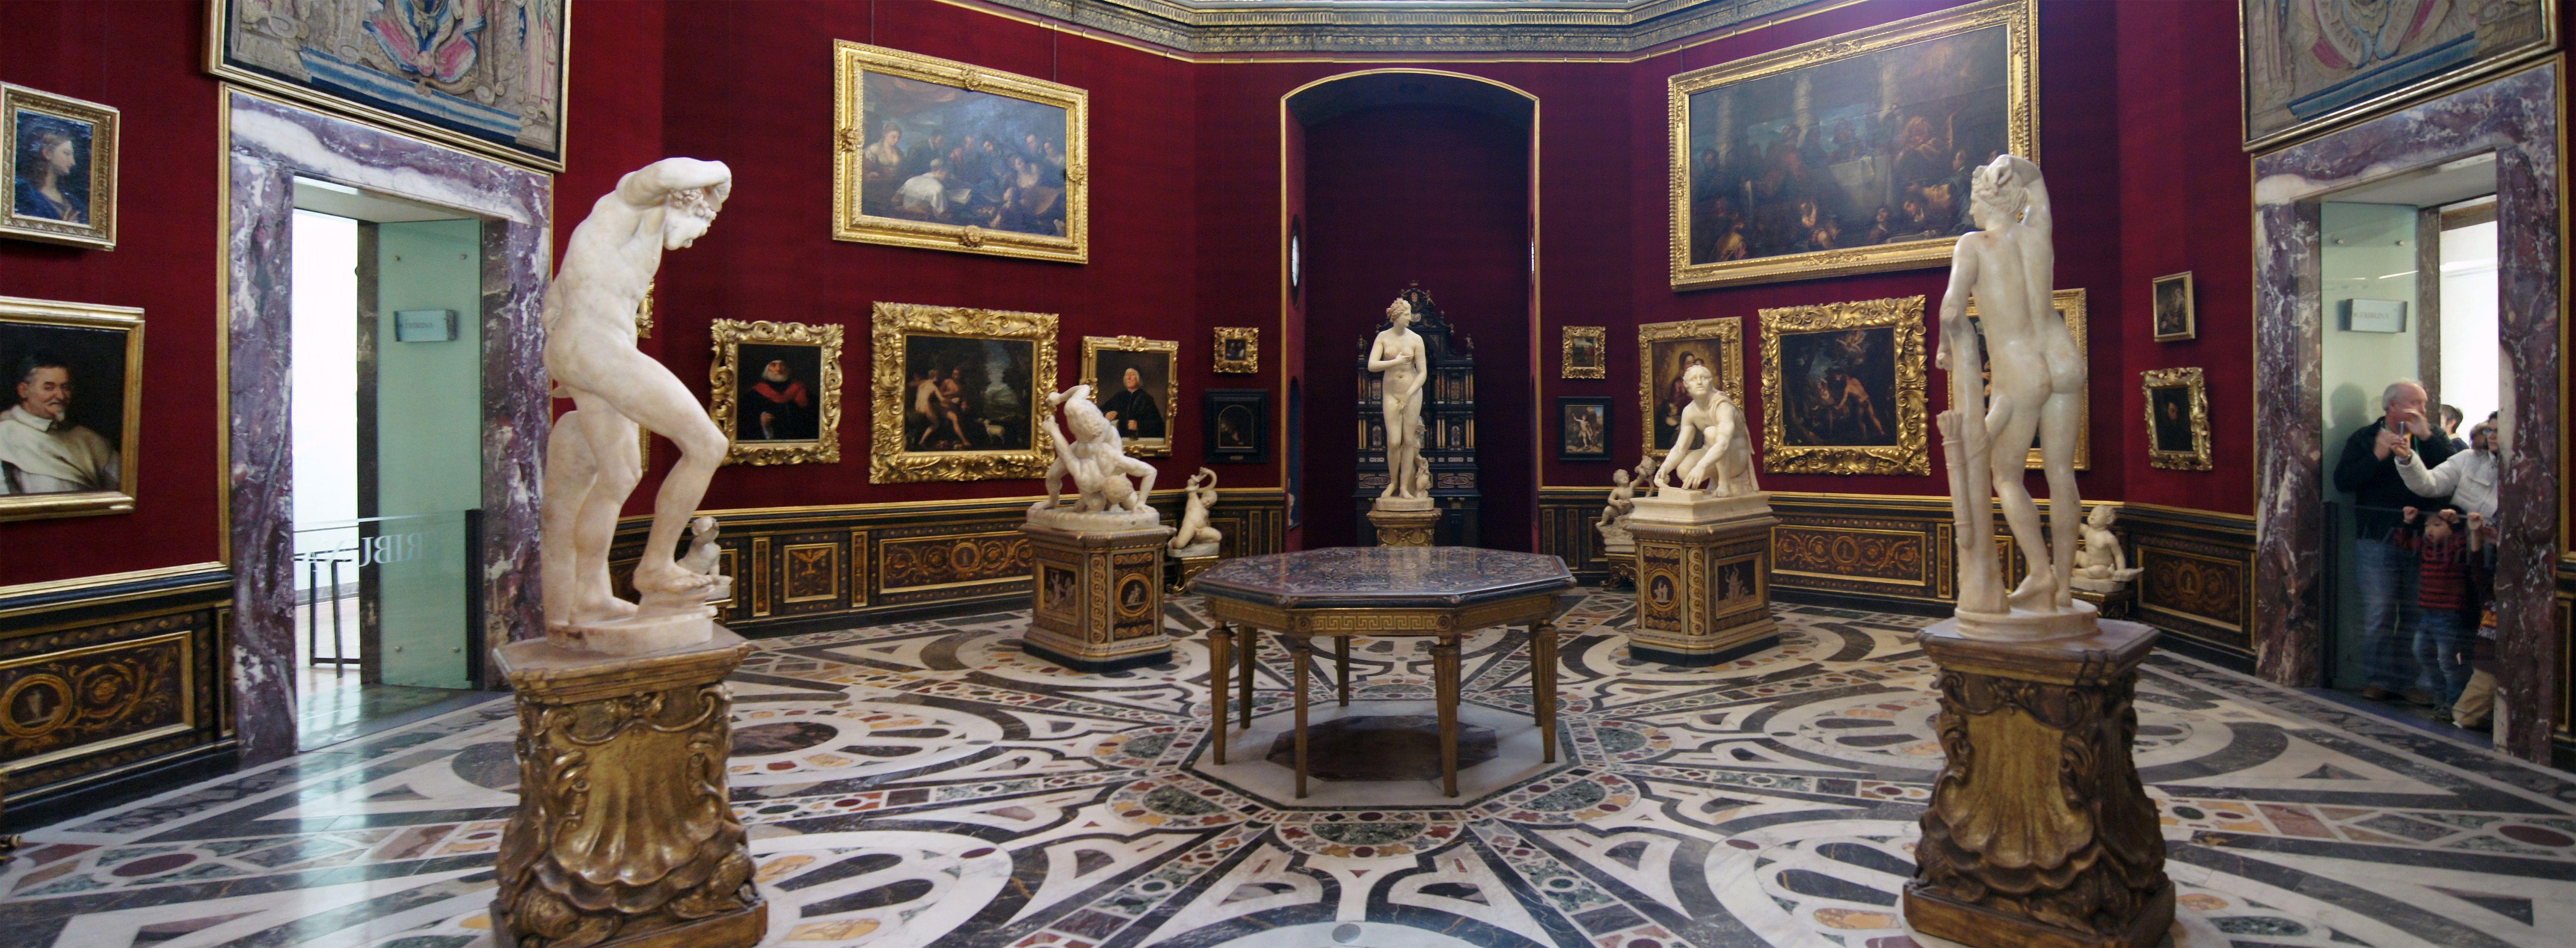 Uffizi Gallery Artworks